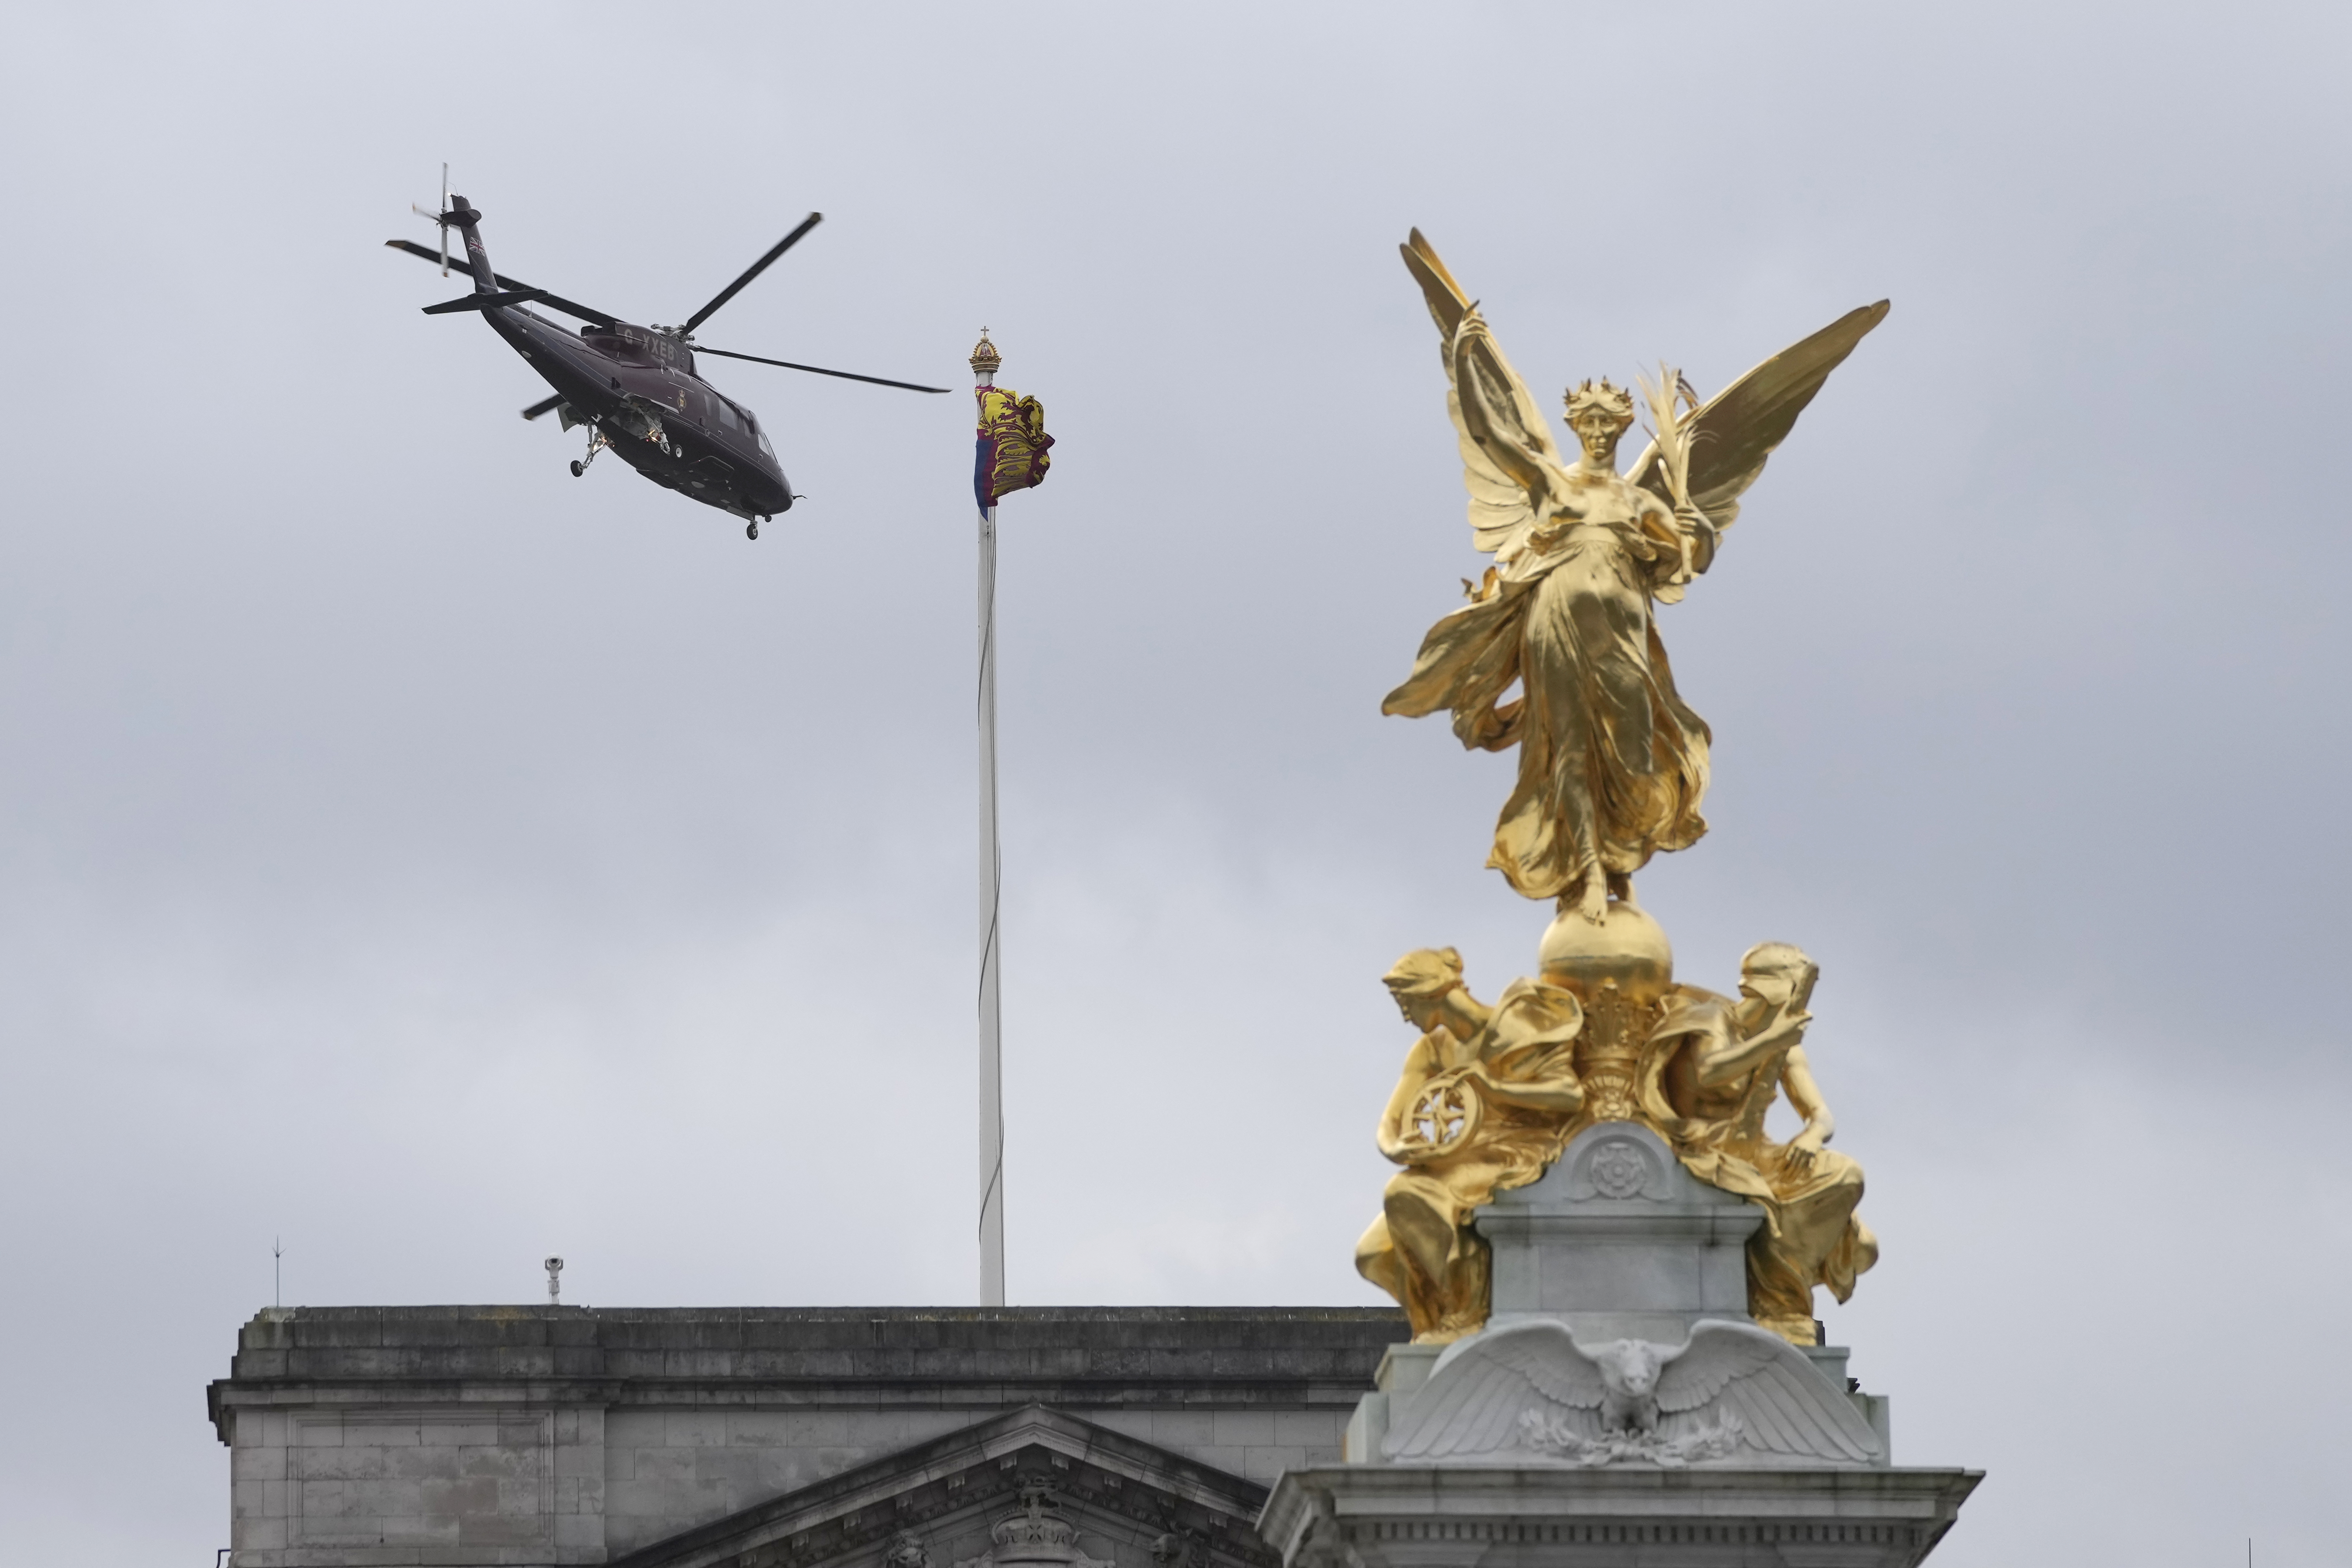 Der Hubschrauber des Königs startet um 15:46 Uhr von den Gärten des Buckingham Palace